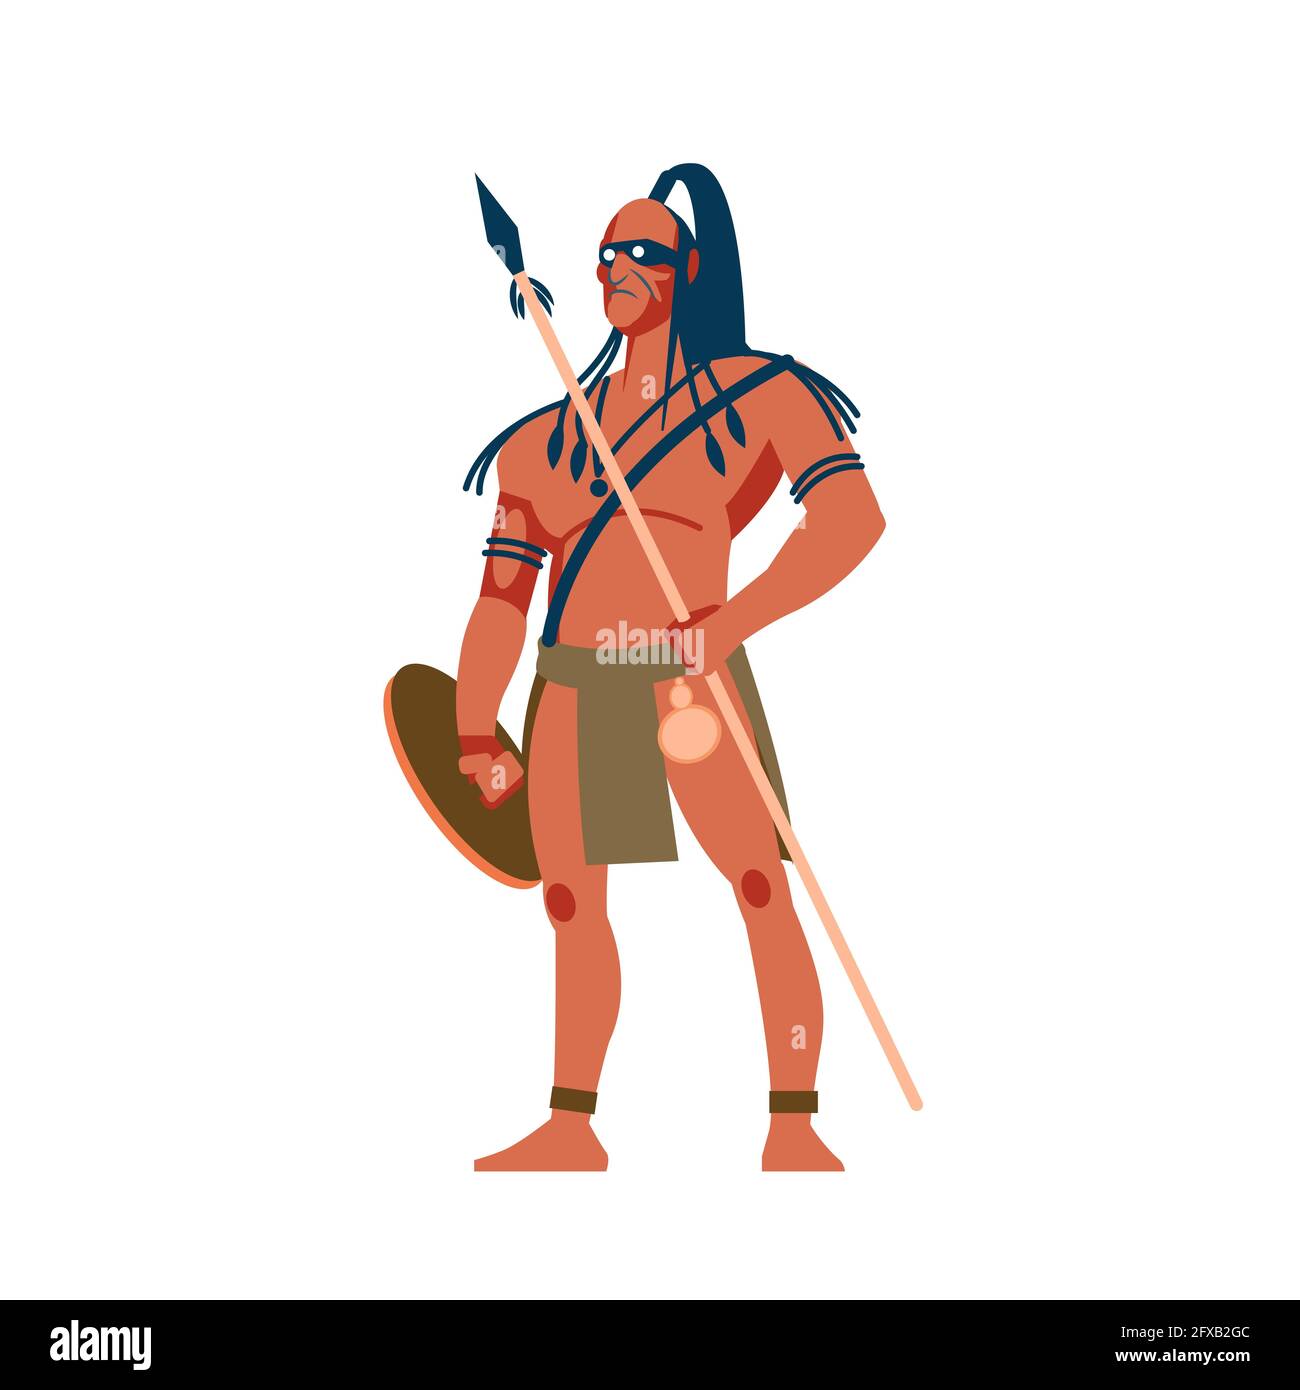 Autochtones armés de tribus africaines, ensemble aborigène australien et américain, membres de la tribu en vêtements traditionnels avec une lance et un bouclier dans son Illustration de Vecteur